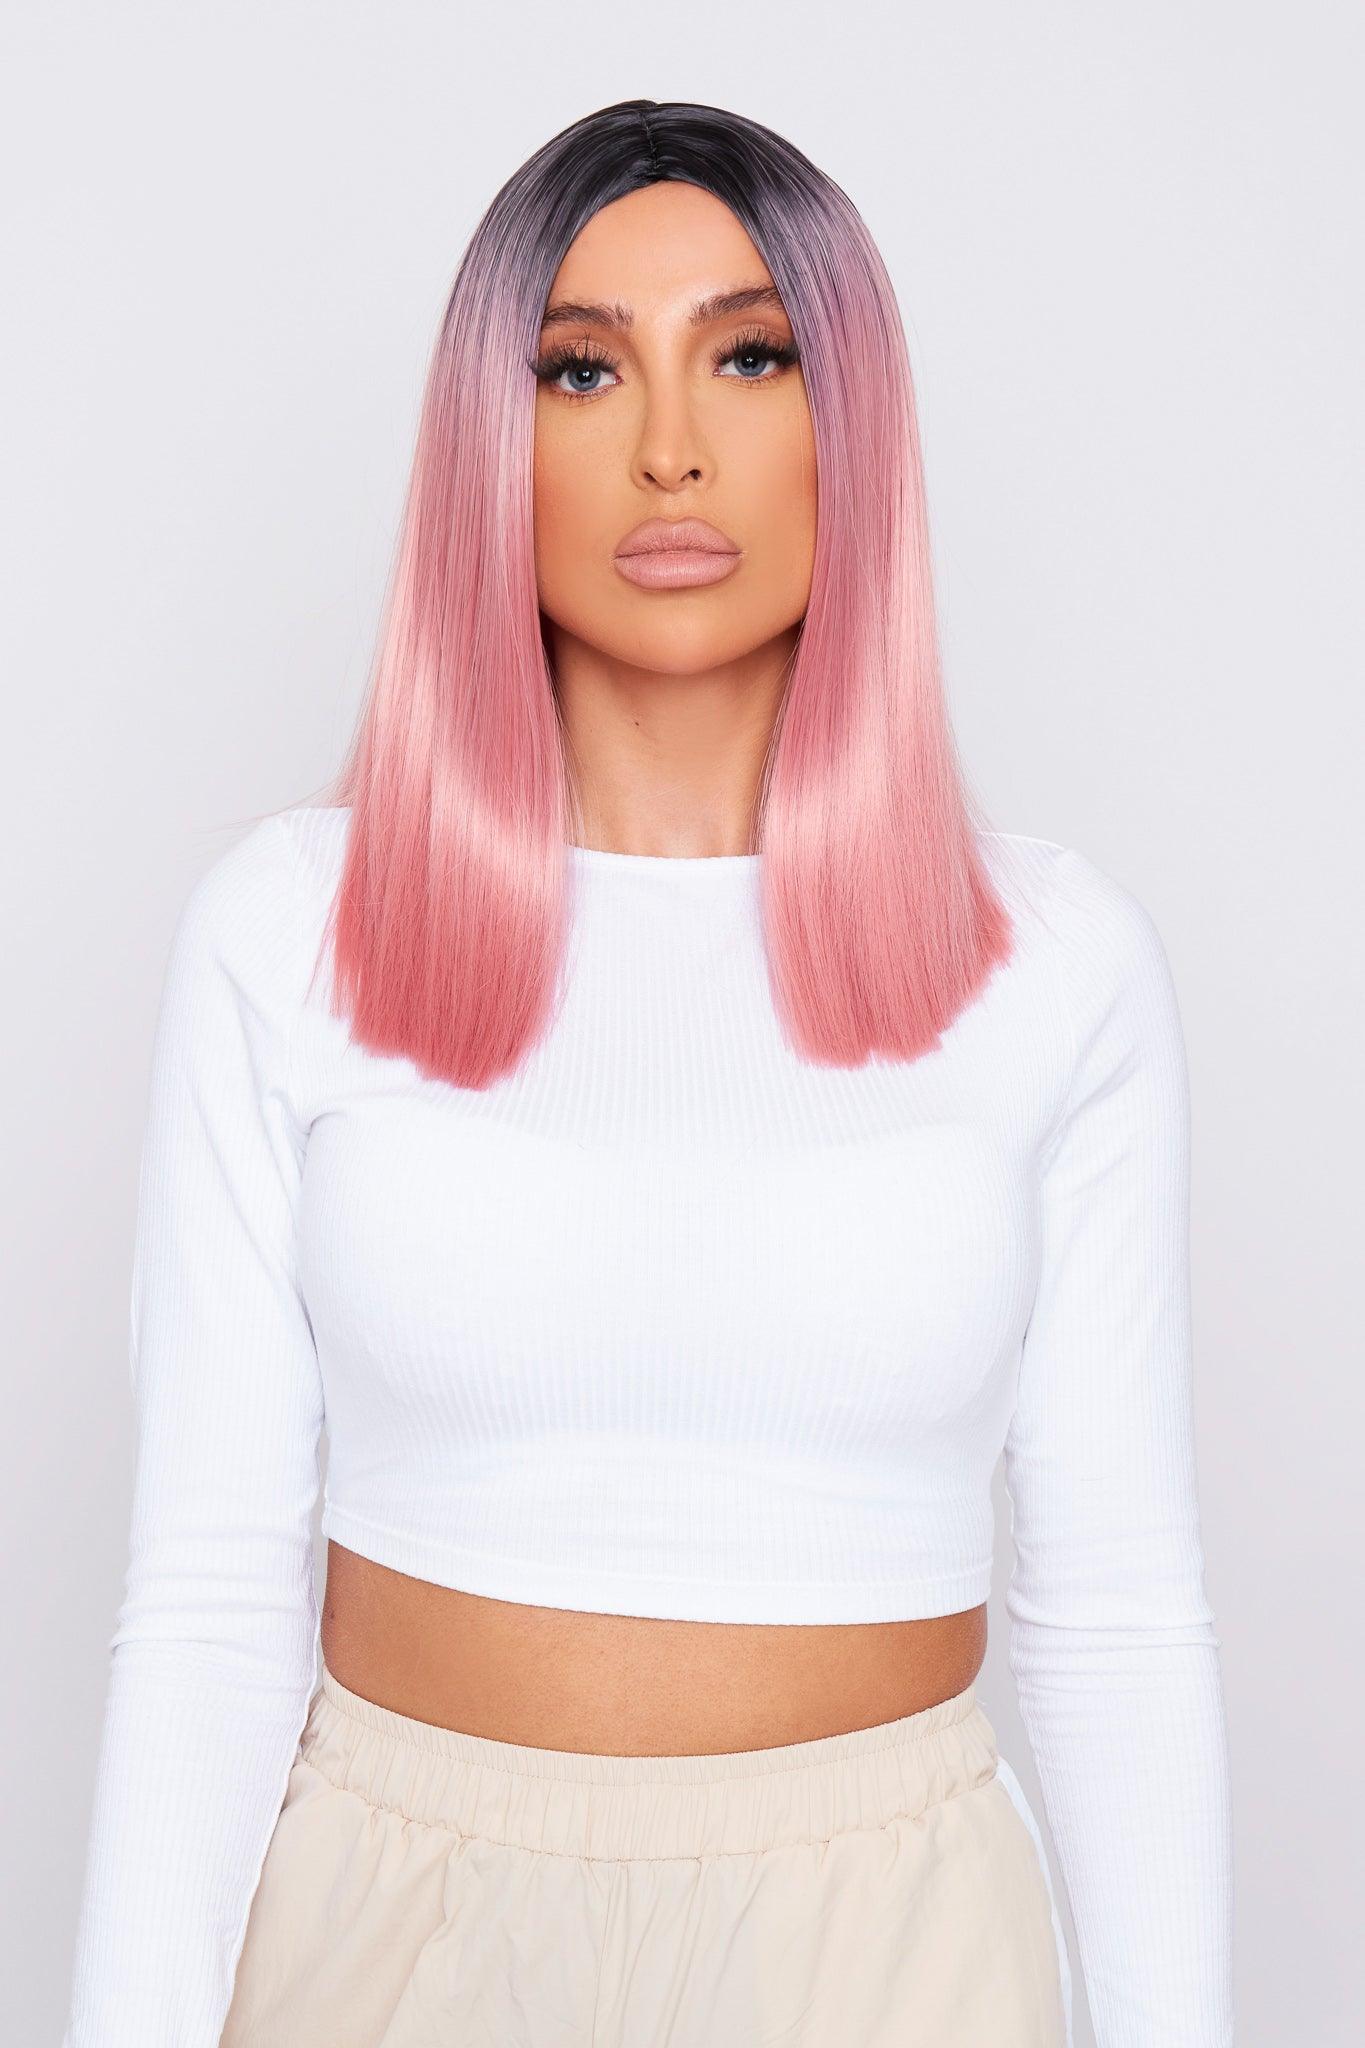 pretty model wearing pink bob wig by pbeauty hair